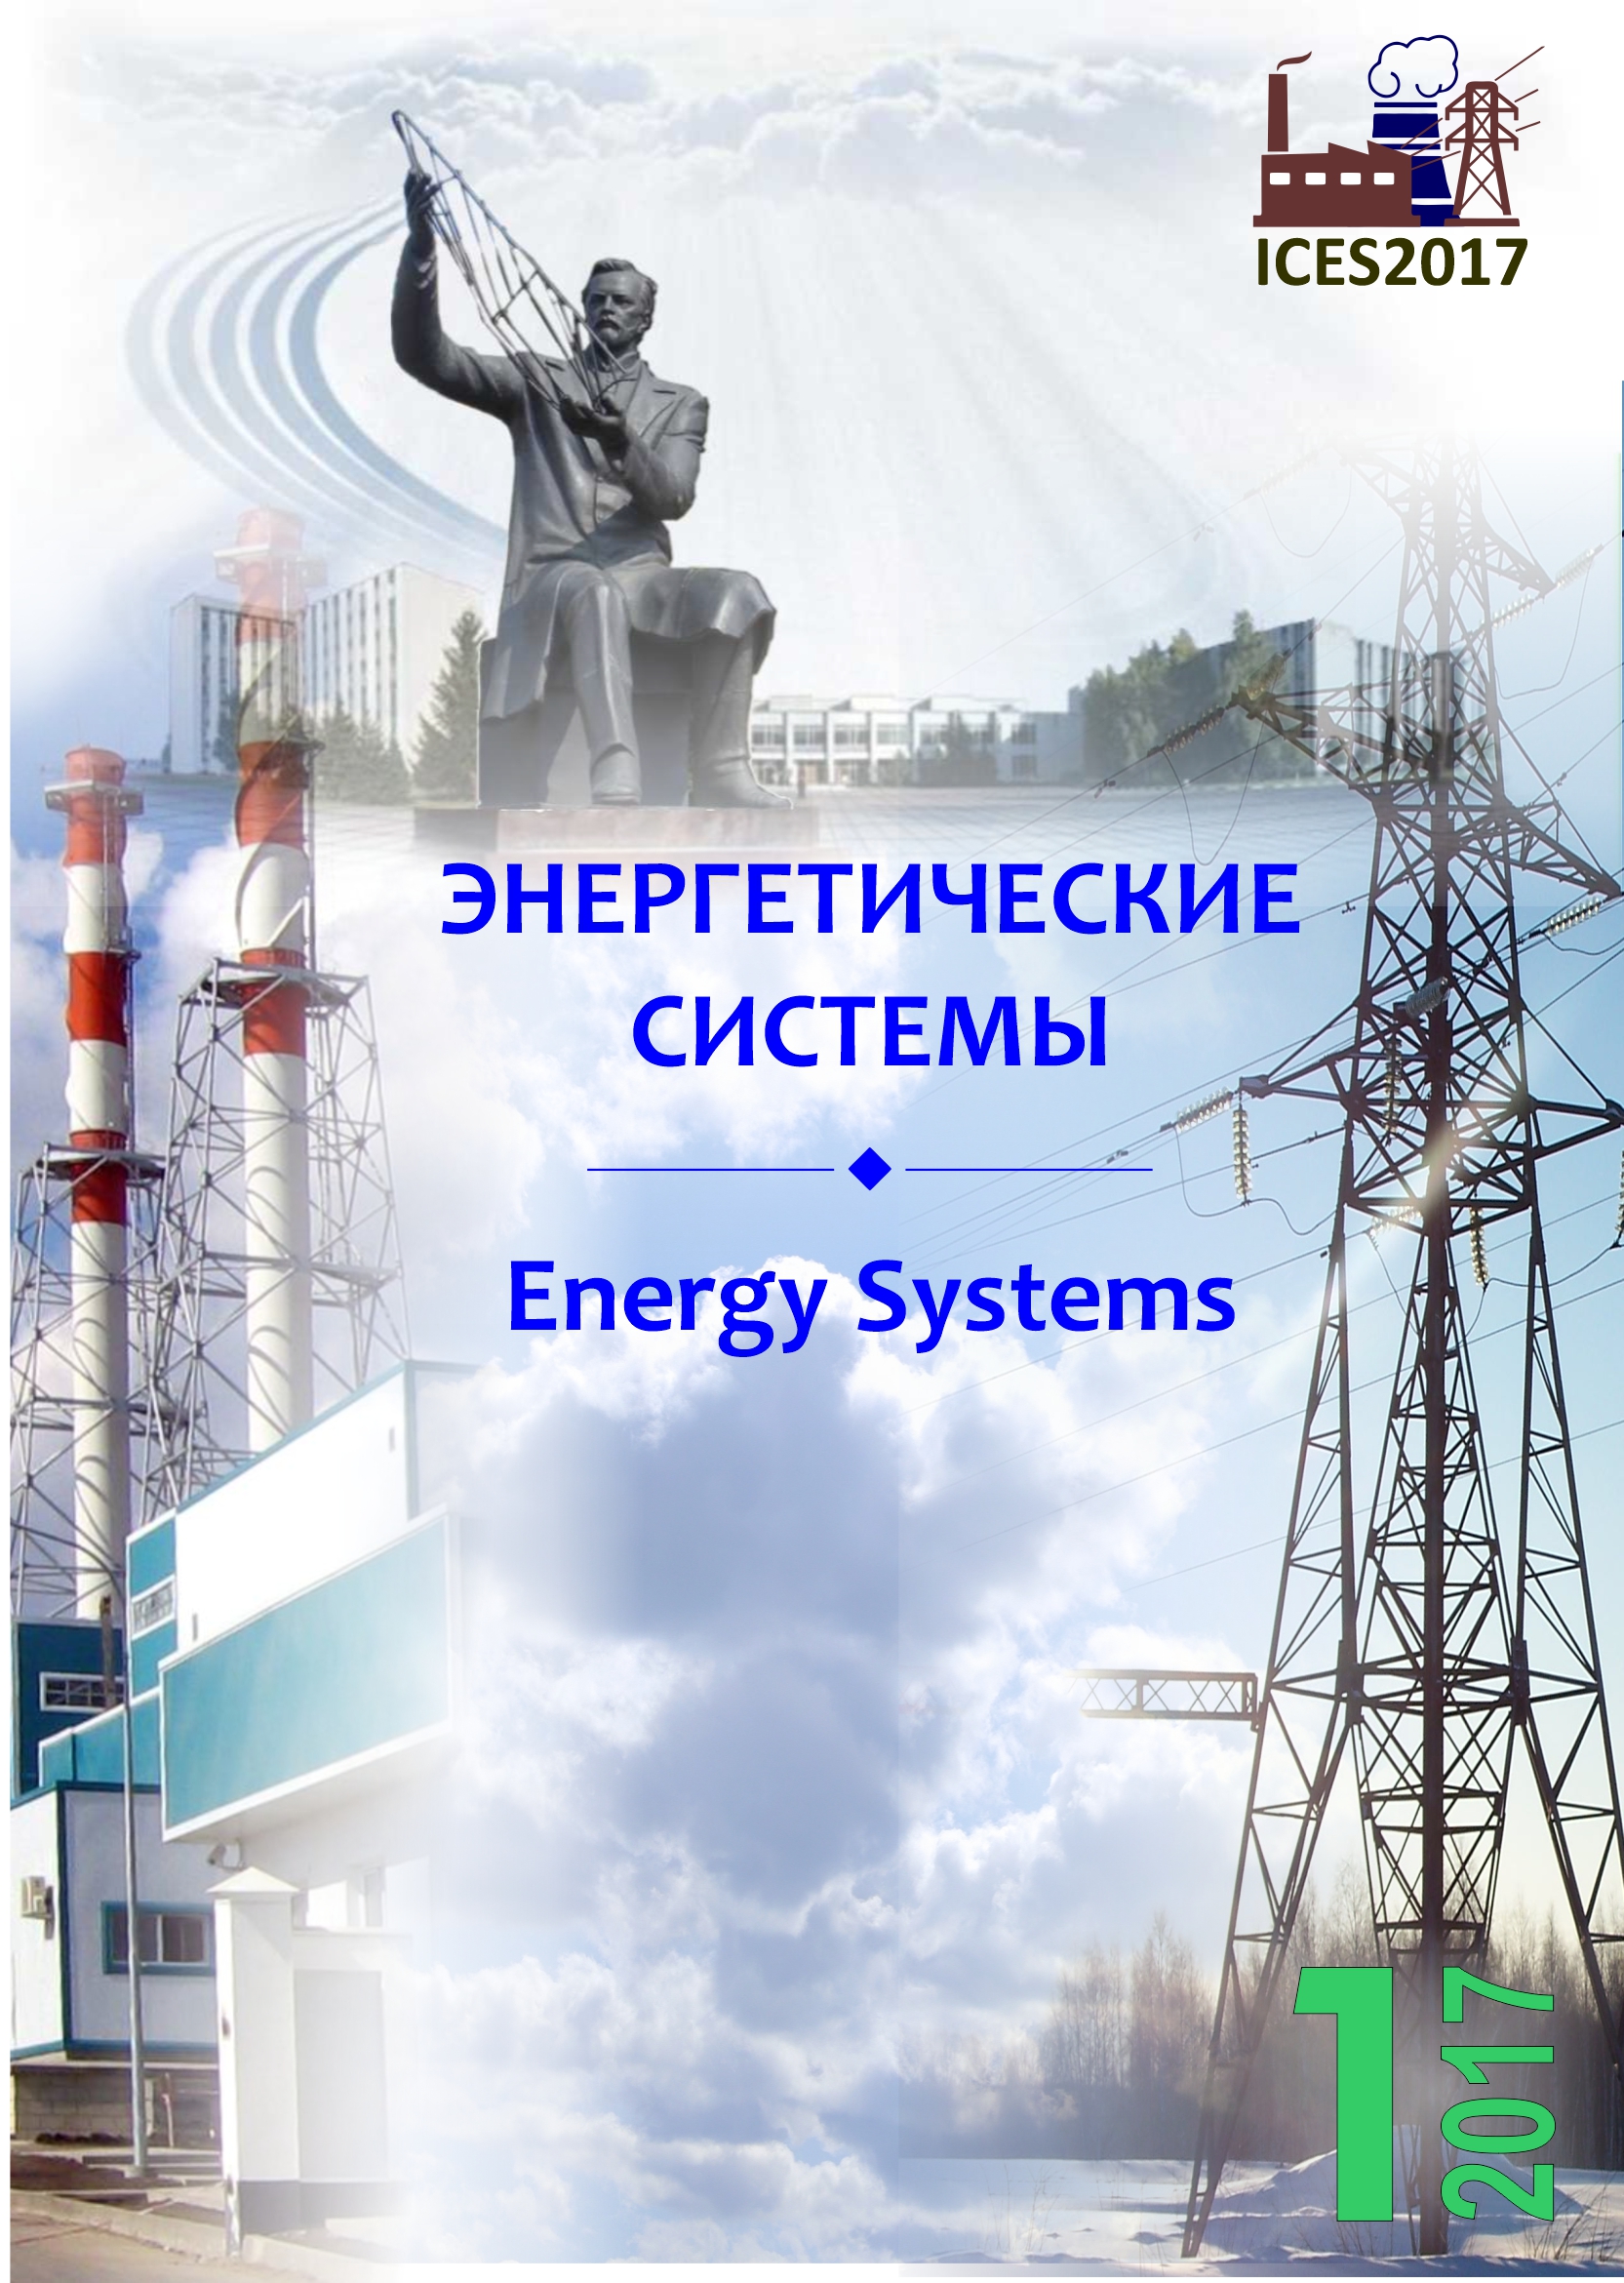 					Показать Том 2 № 1 (2017): II международная научно-техническая конференция «Энергетические системы» (ICES-2017)
				